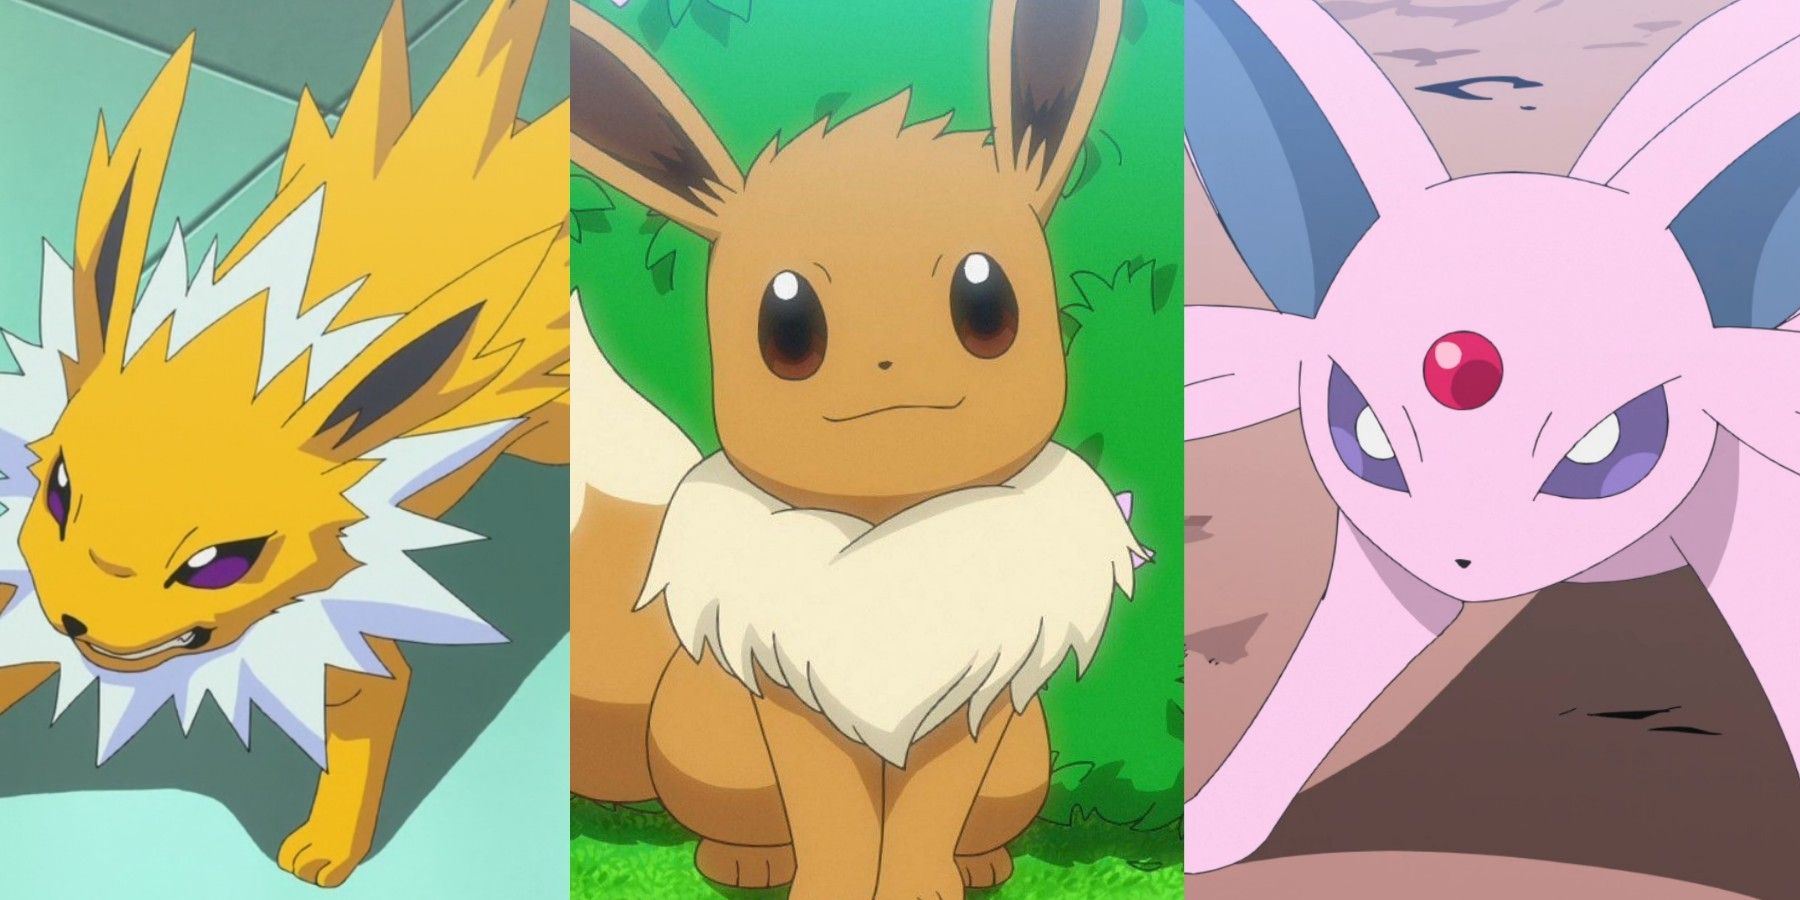 favoritos Pokémon Sleep Melhores Evoluções de Eevee Espeon Jolteon